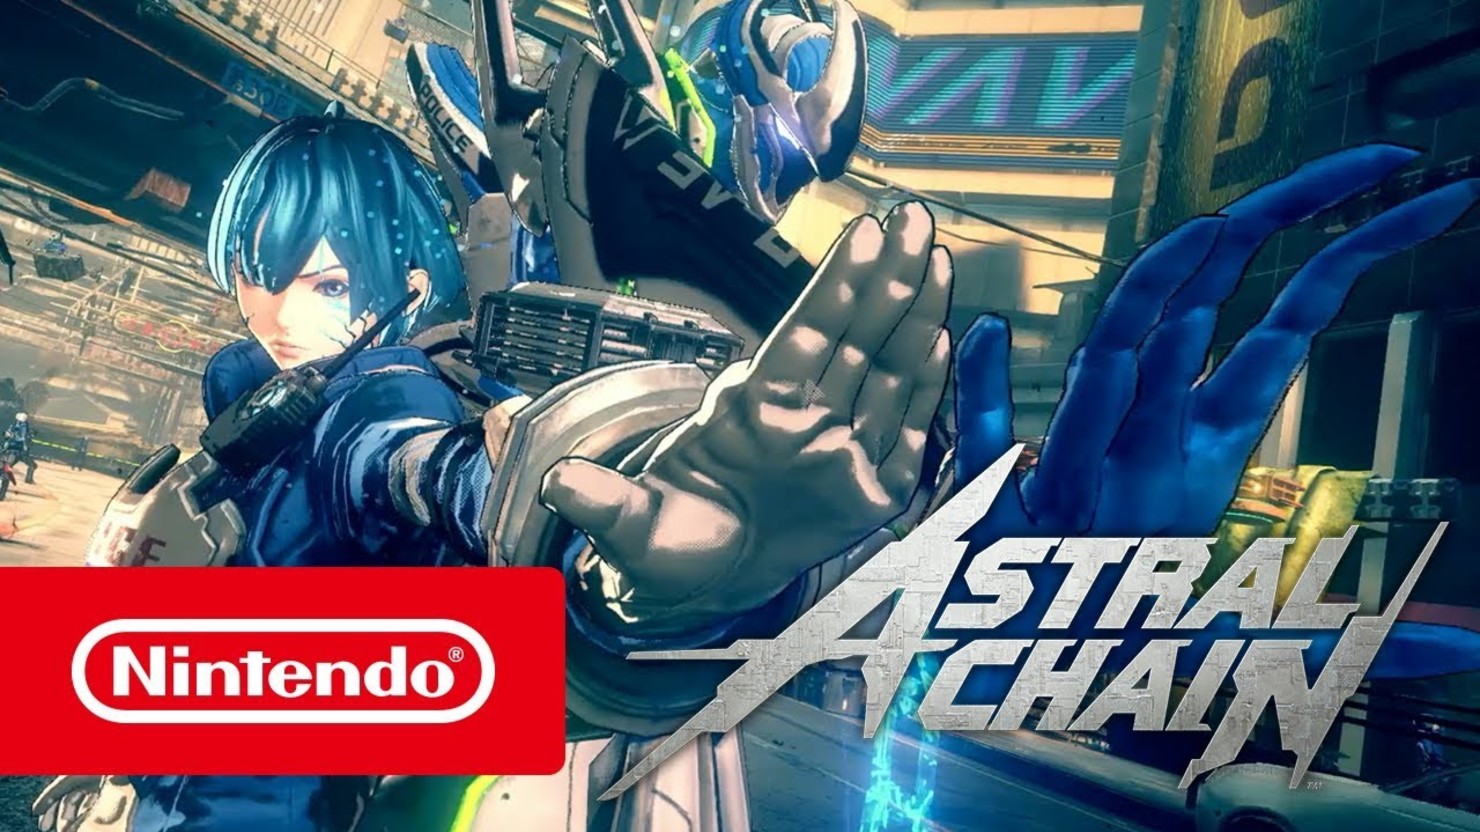 Astral chain nintendo. Astral Chain Nintendo Switch. Astral Chain Nintendo Switch Скриншоты. Astral Chain Nintendo обзор. Astral Chain геймплей.